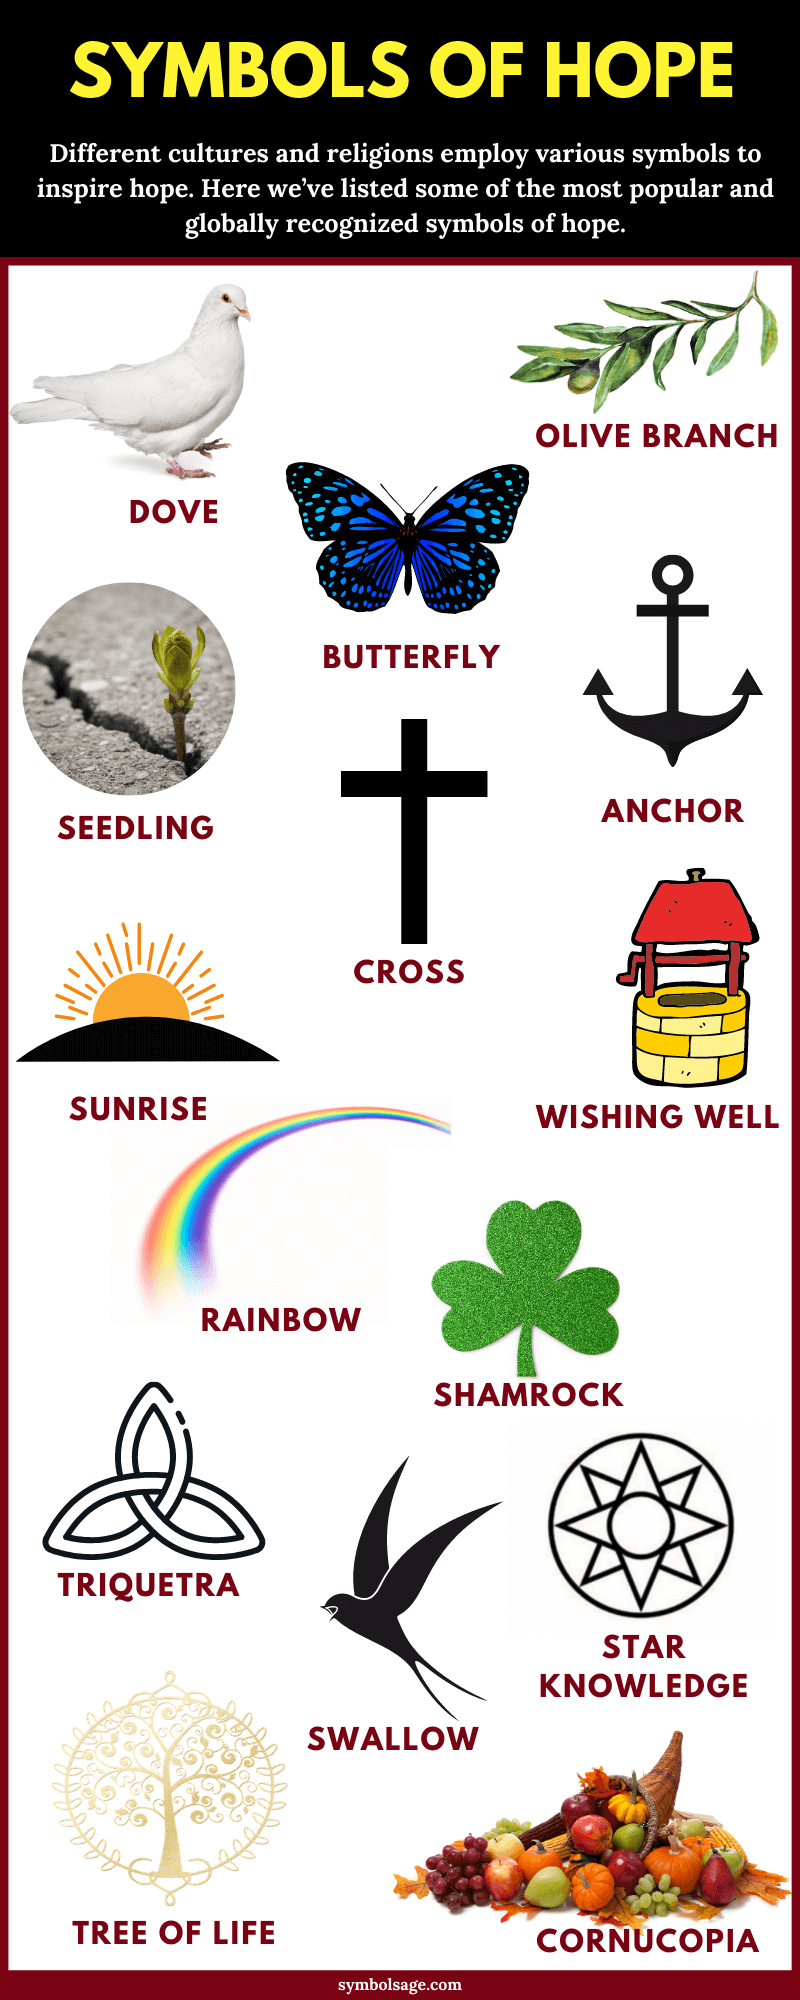 Symbols of hope list